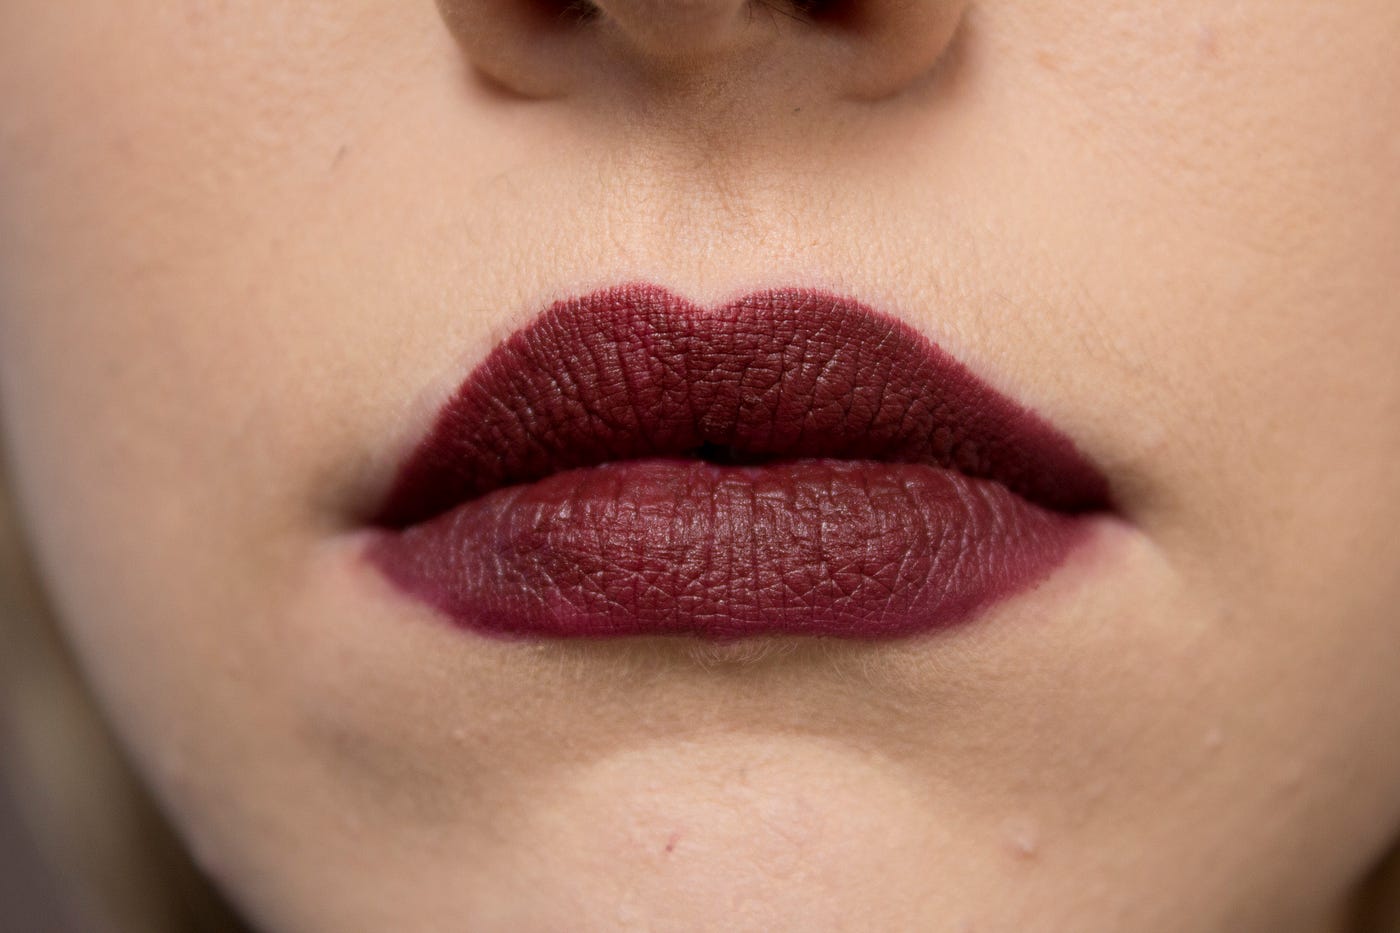 MAC Sin Lipstick